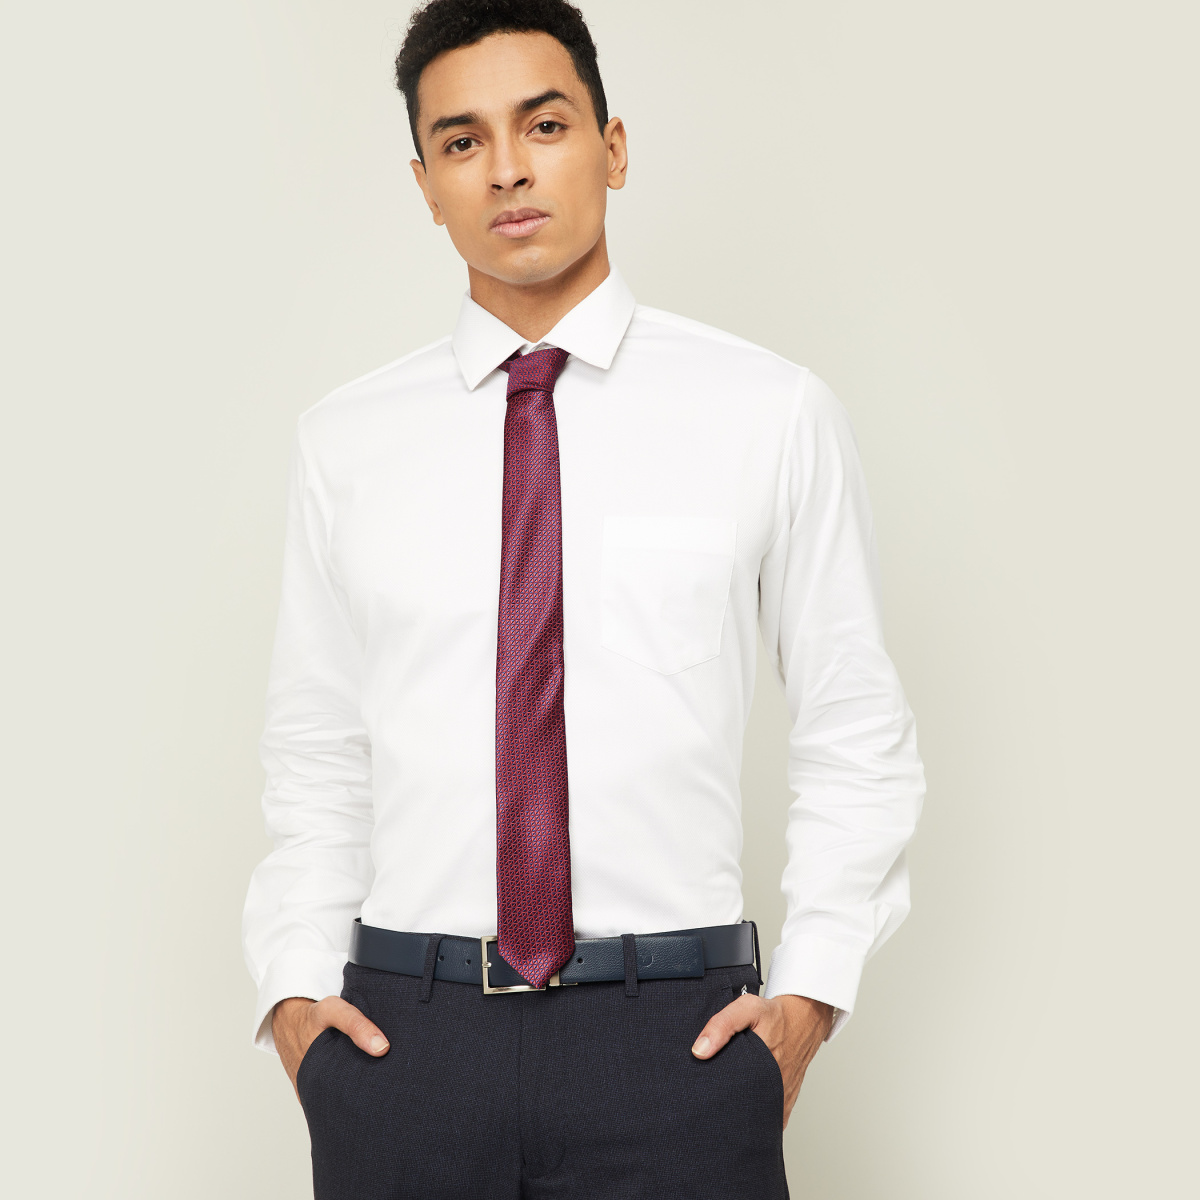 VAN HEUSEN Men Solid Formal Shirt with Tie